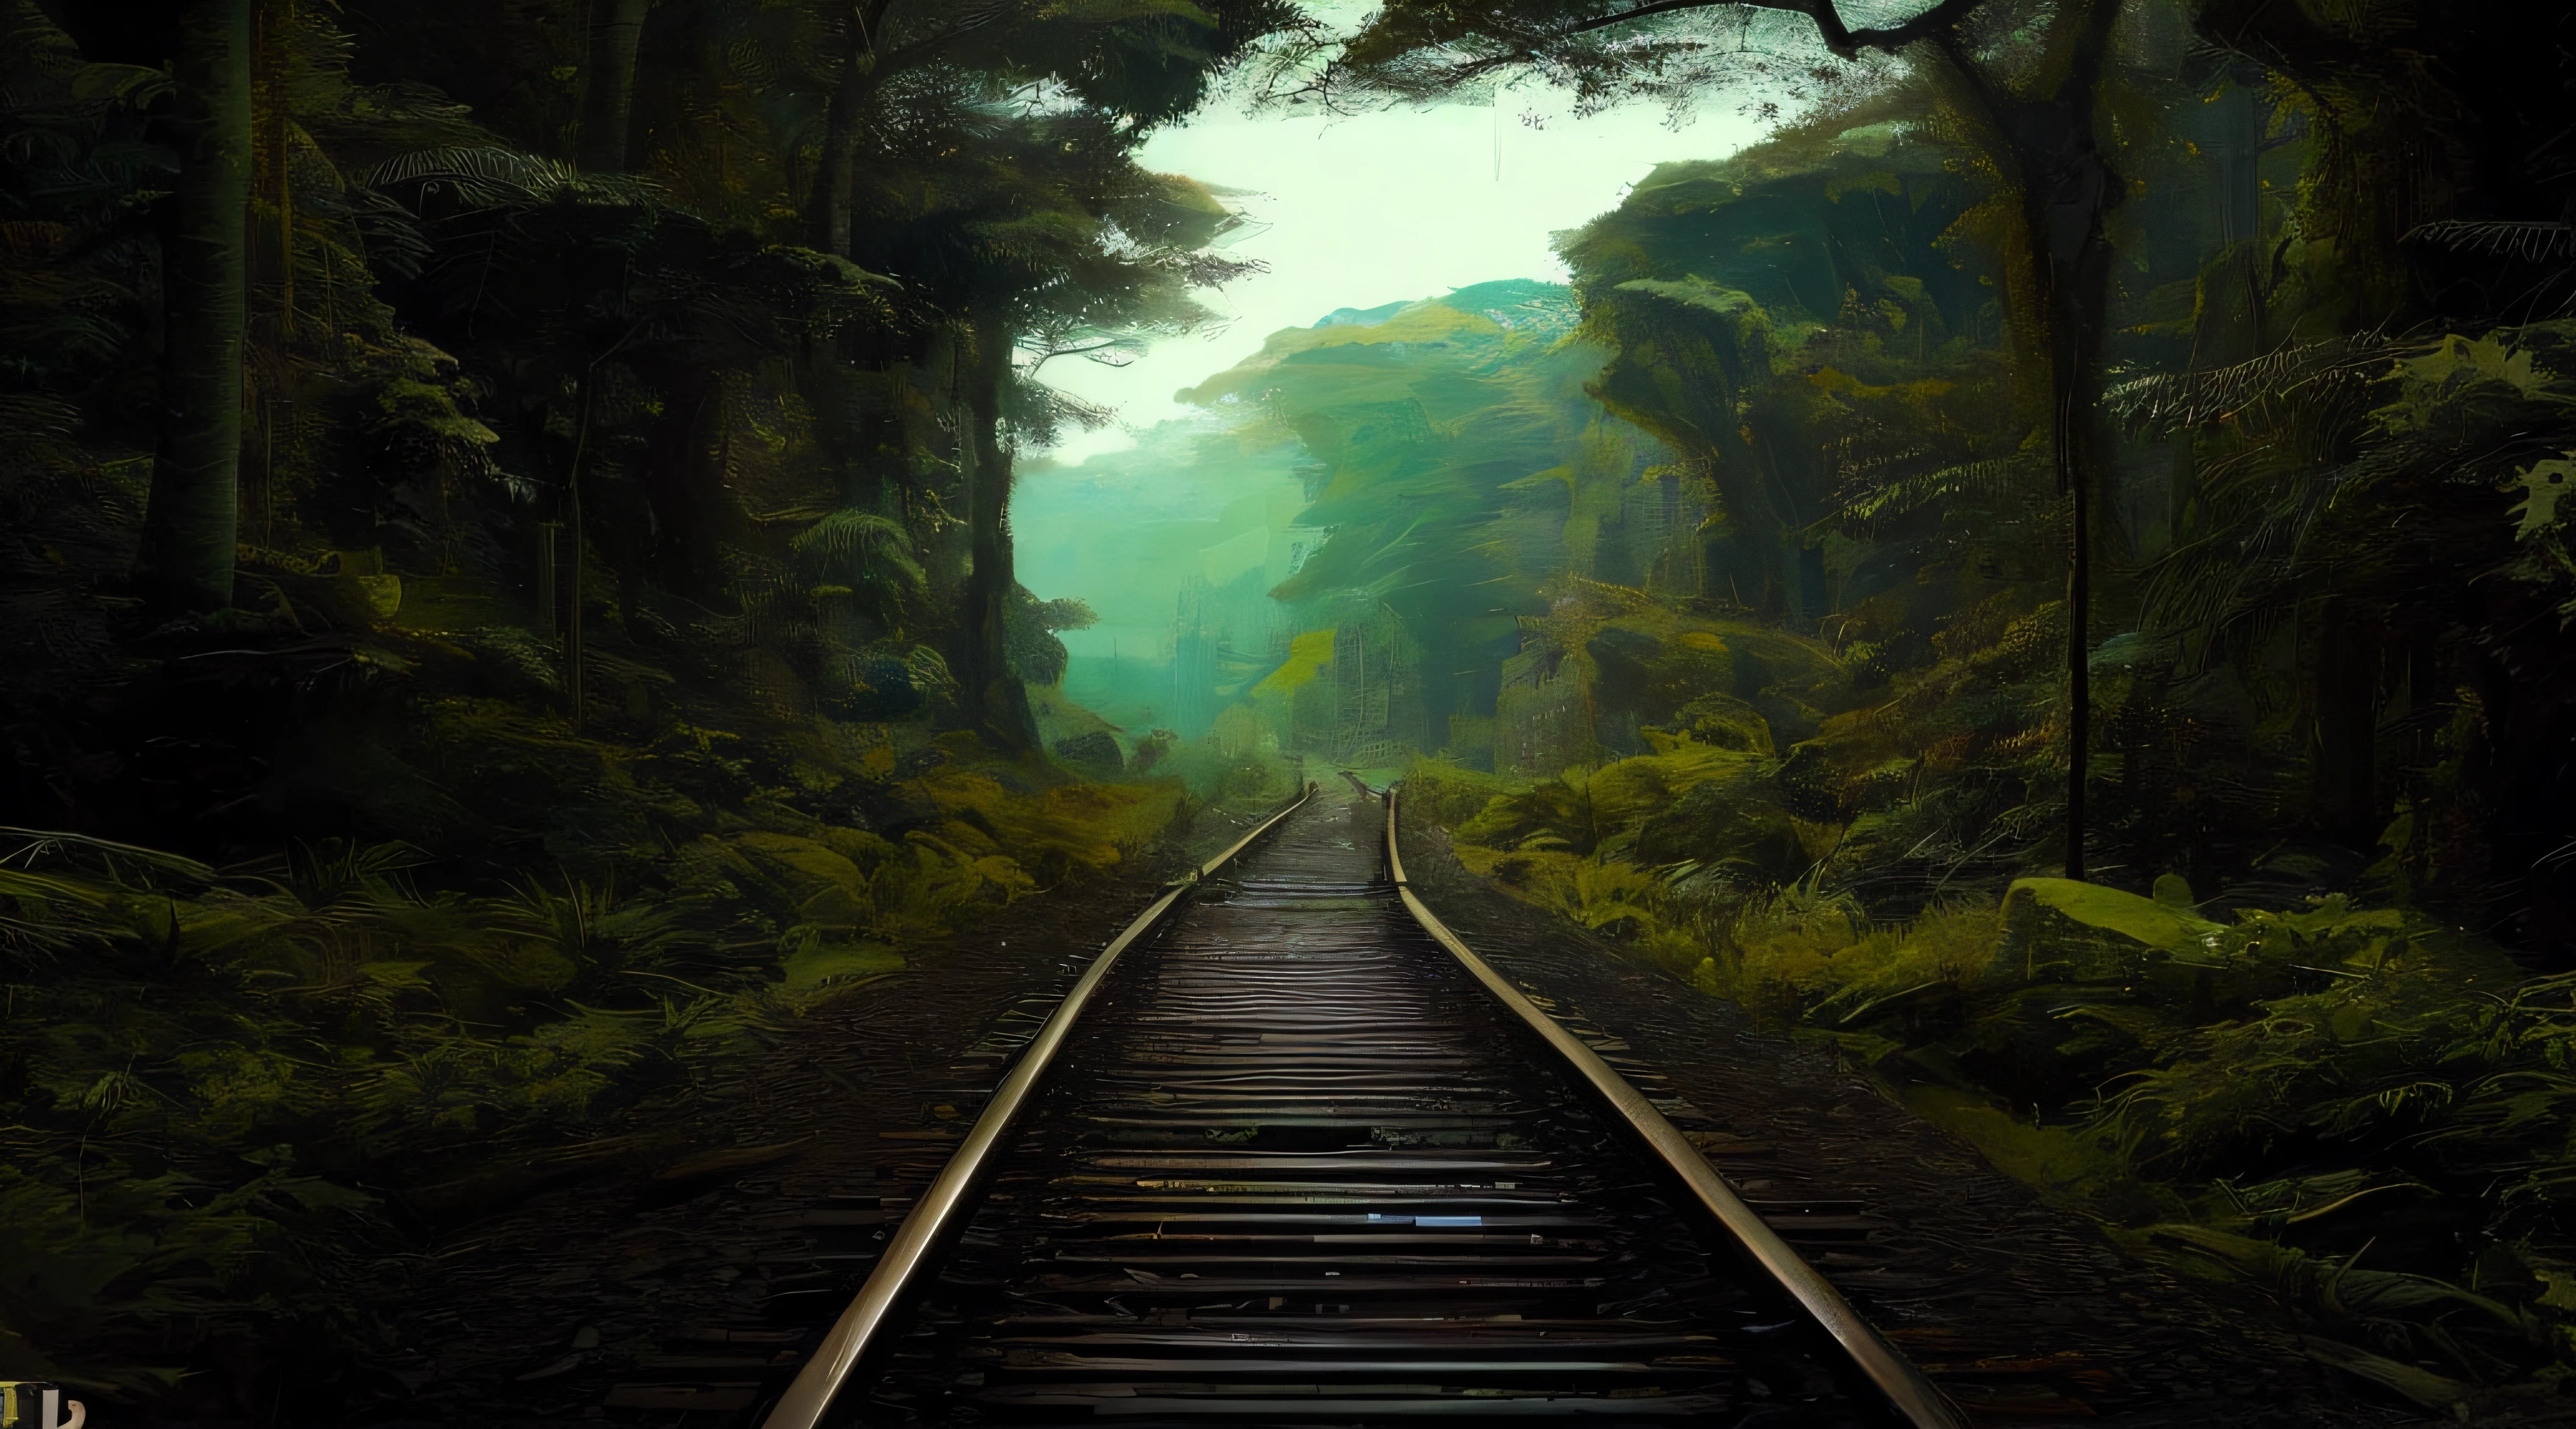 有一条火车轨道穿过一片森林, 在丛林森林火车轨道上, 废弃铁路, 奇怪的丛林, 另一个世界的丛林深处, 铁路, 铁路s abandonadas, 步道, 火车, 生物力学铁路, 外星丛林, 5 0 0 像素, 500像素, 惊险, 漂亮的图片, 国家地理图片", 火车 LONGE